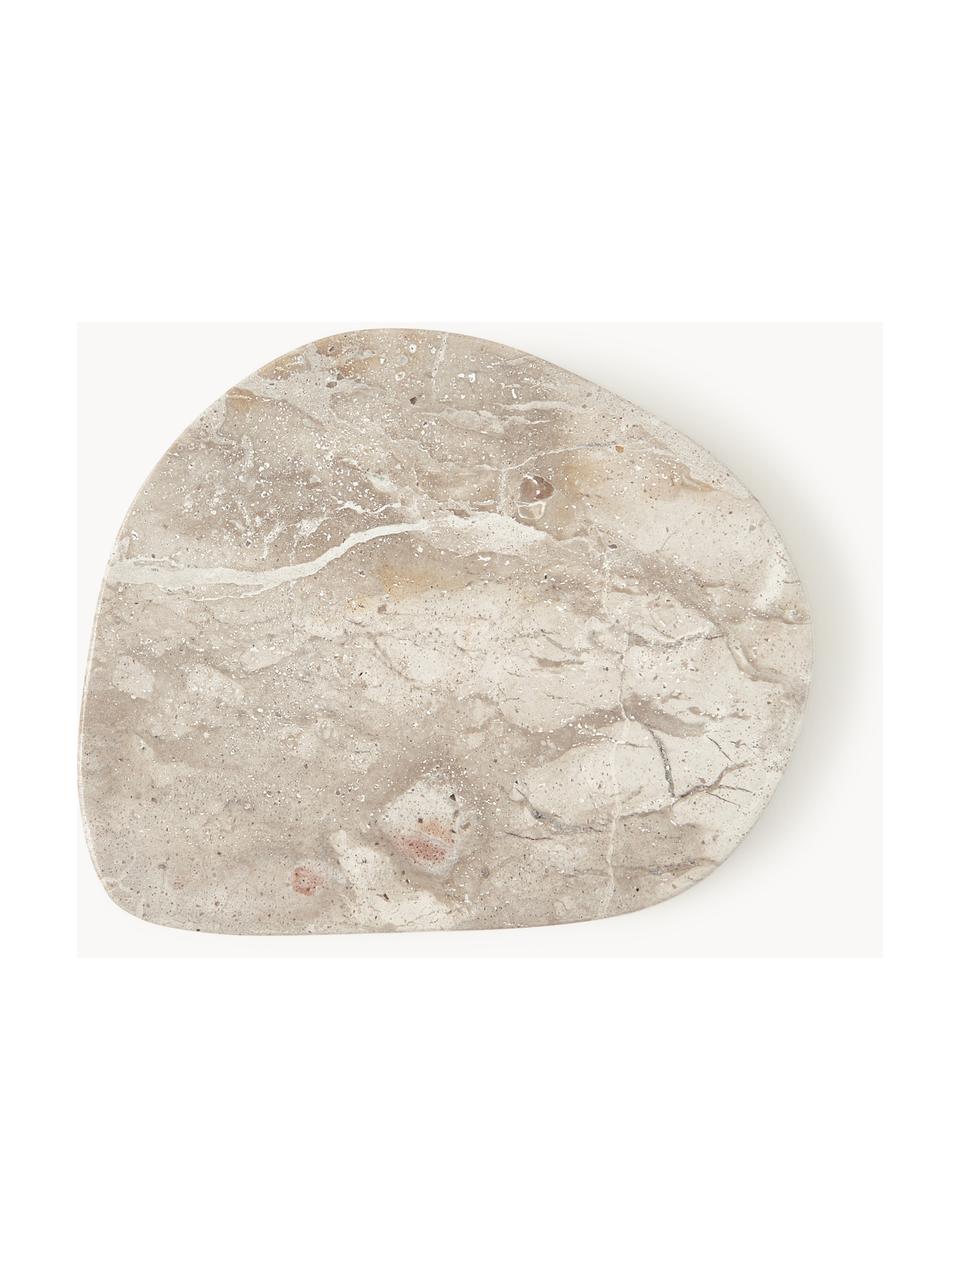 Mramorové podtácky Lio, 4 ks, Mramor, Béžová, mramorovaná, Š 10 cm, H 10 cm